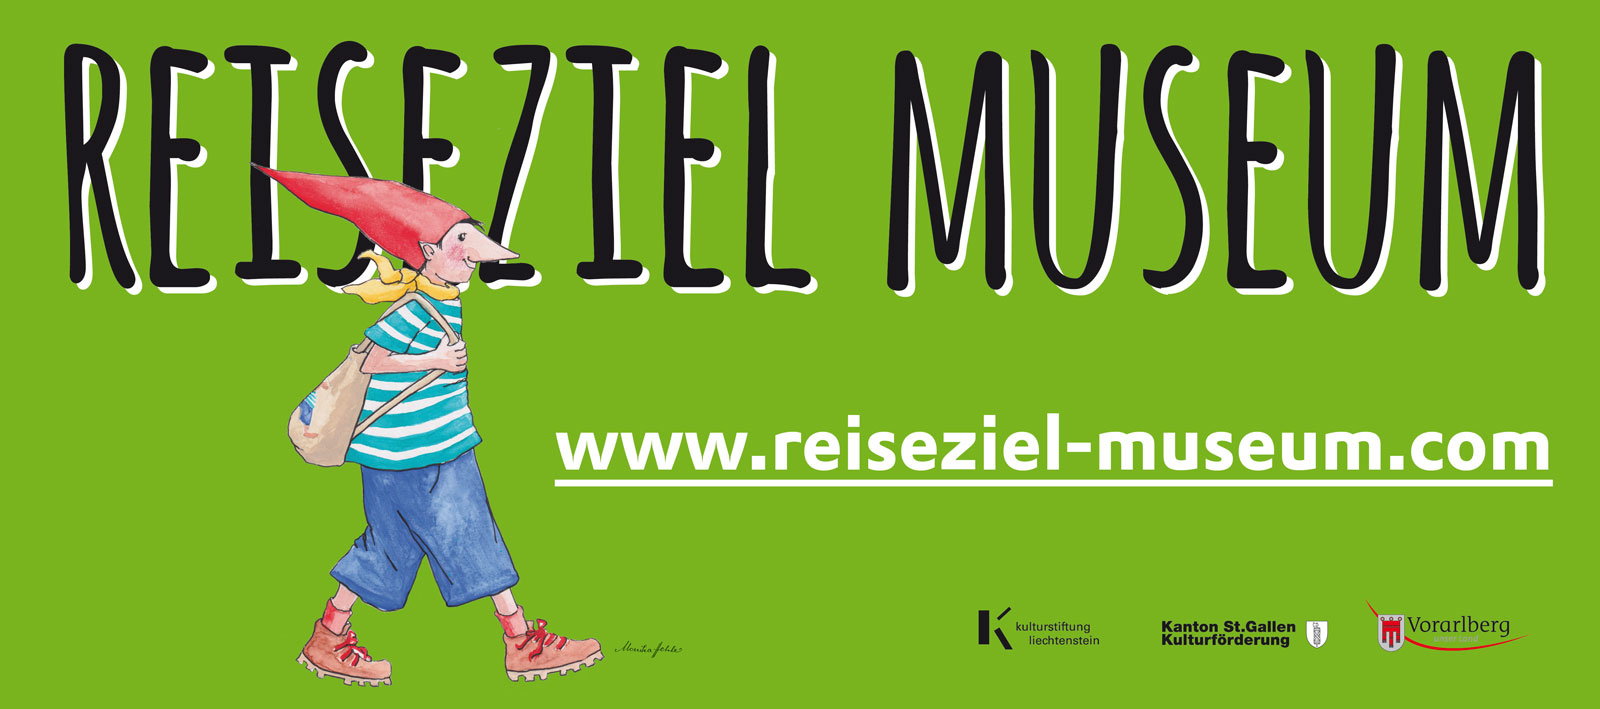 03.07., 07.08., 04.09.: Reiseziel Museum